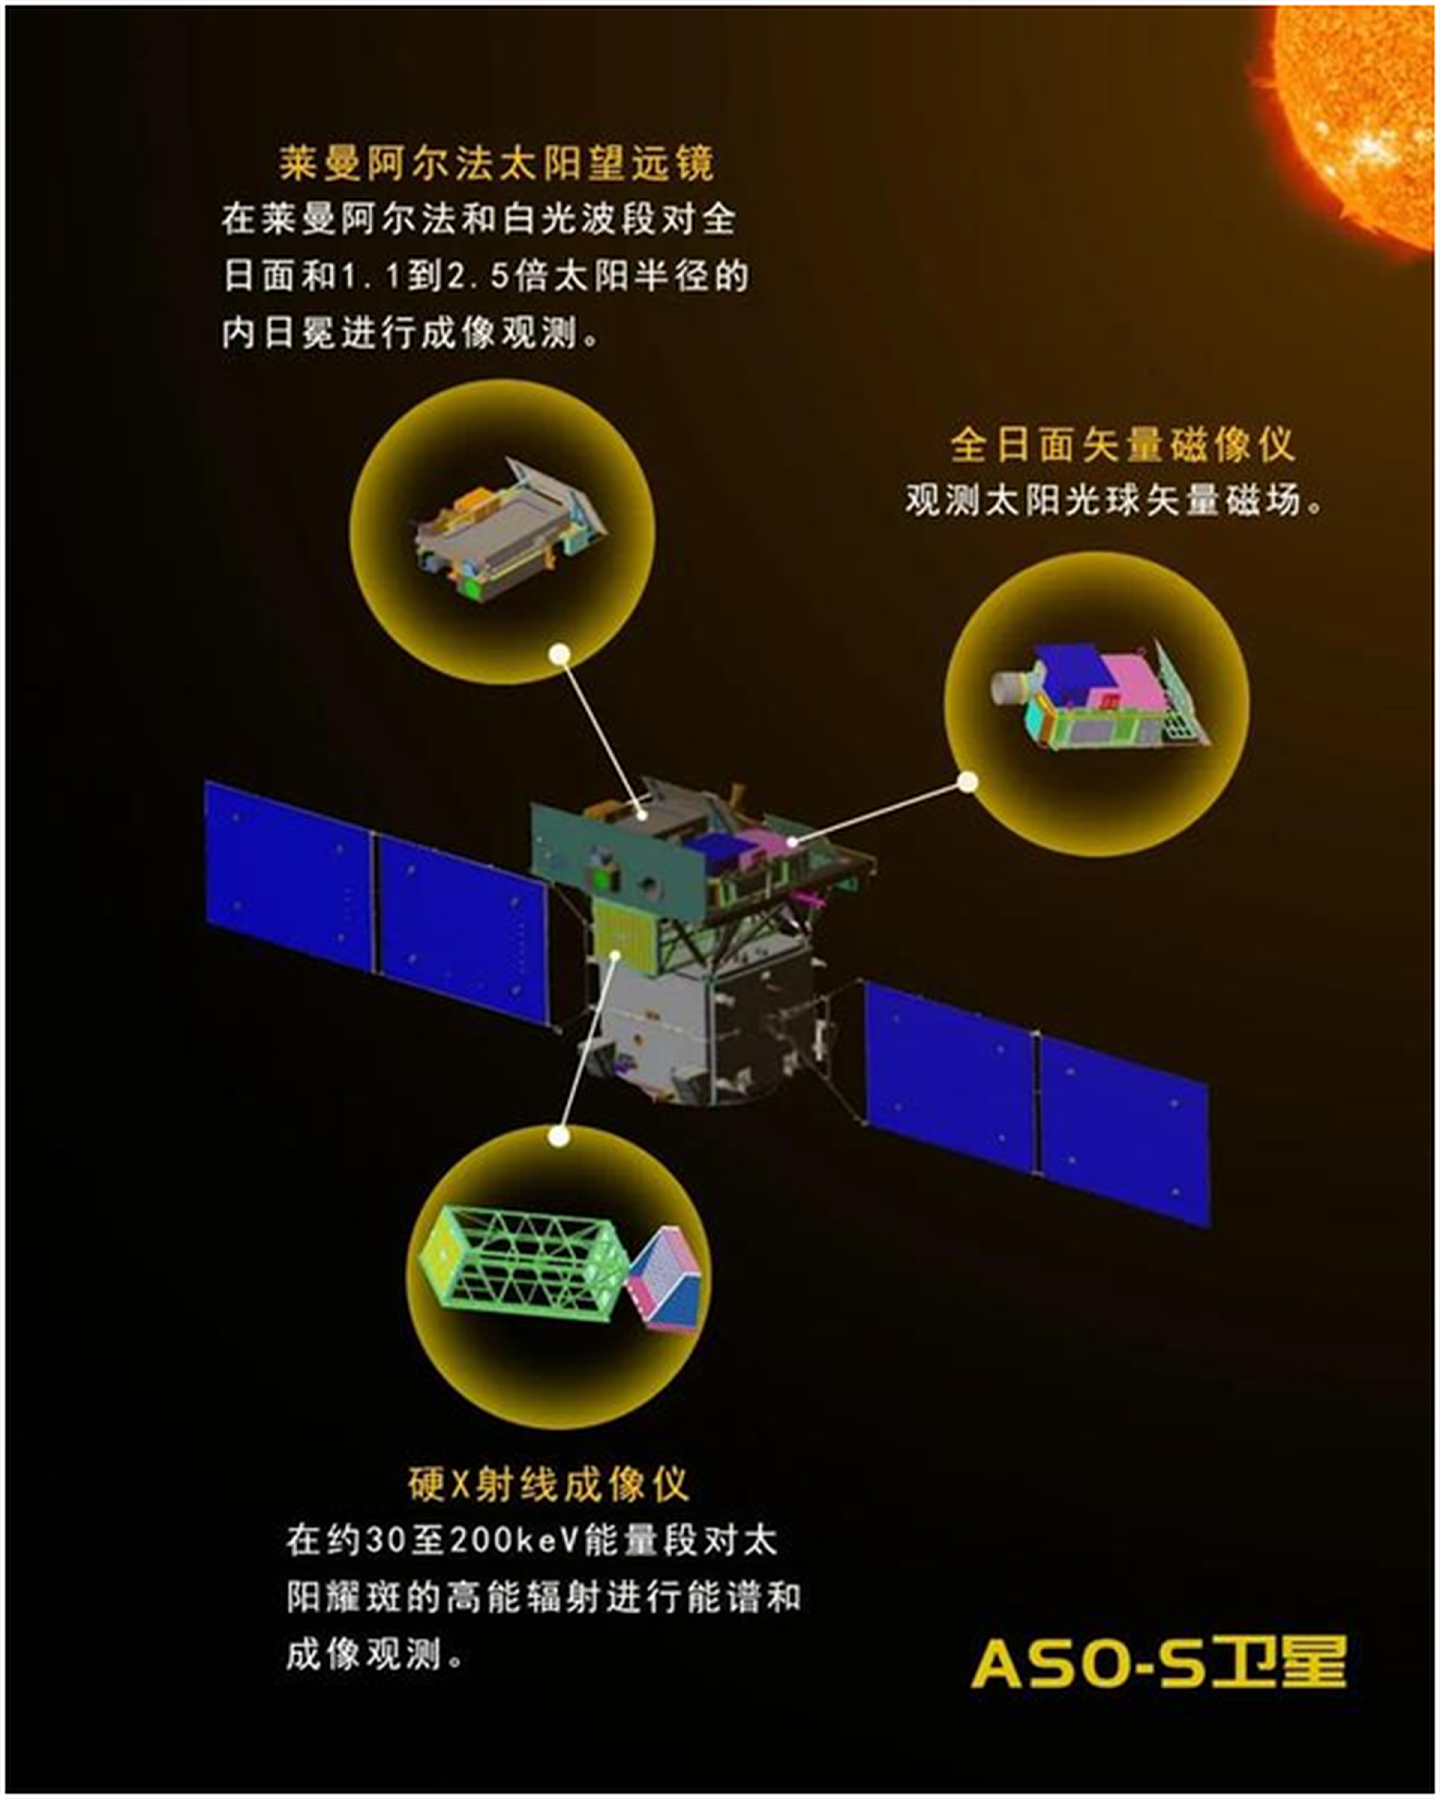 中国首颗综合性太阳探测卫星——先进天基太阳天文台（ASO-S）将搭载3个主要载荷，主要科学目标为研究“一磁两暴”。（紫金山天文台）